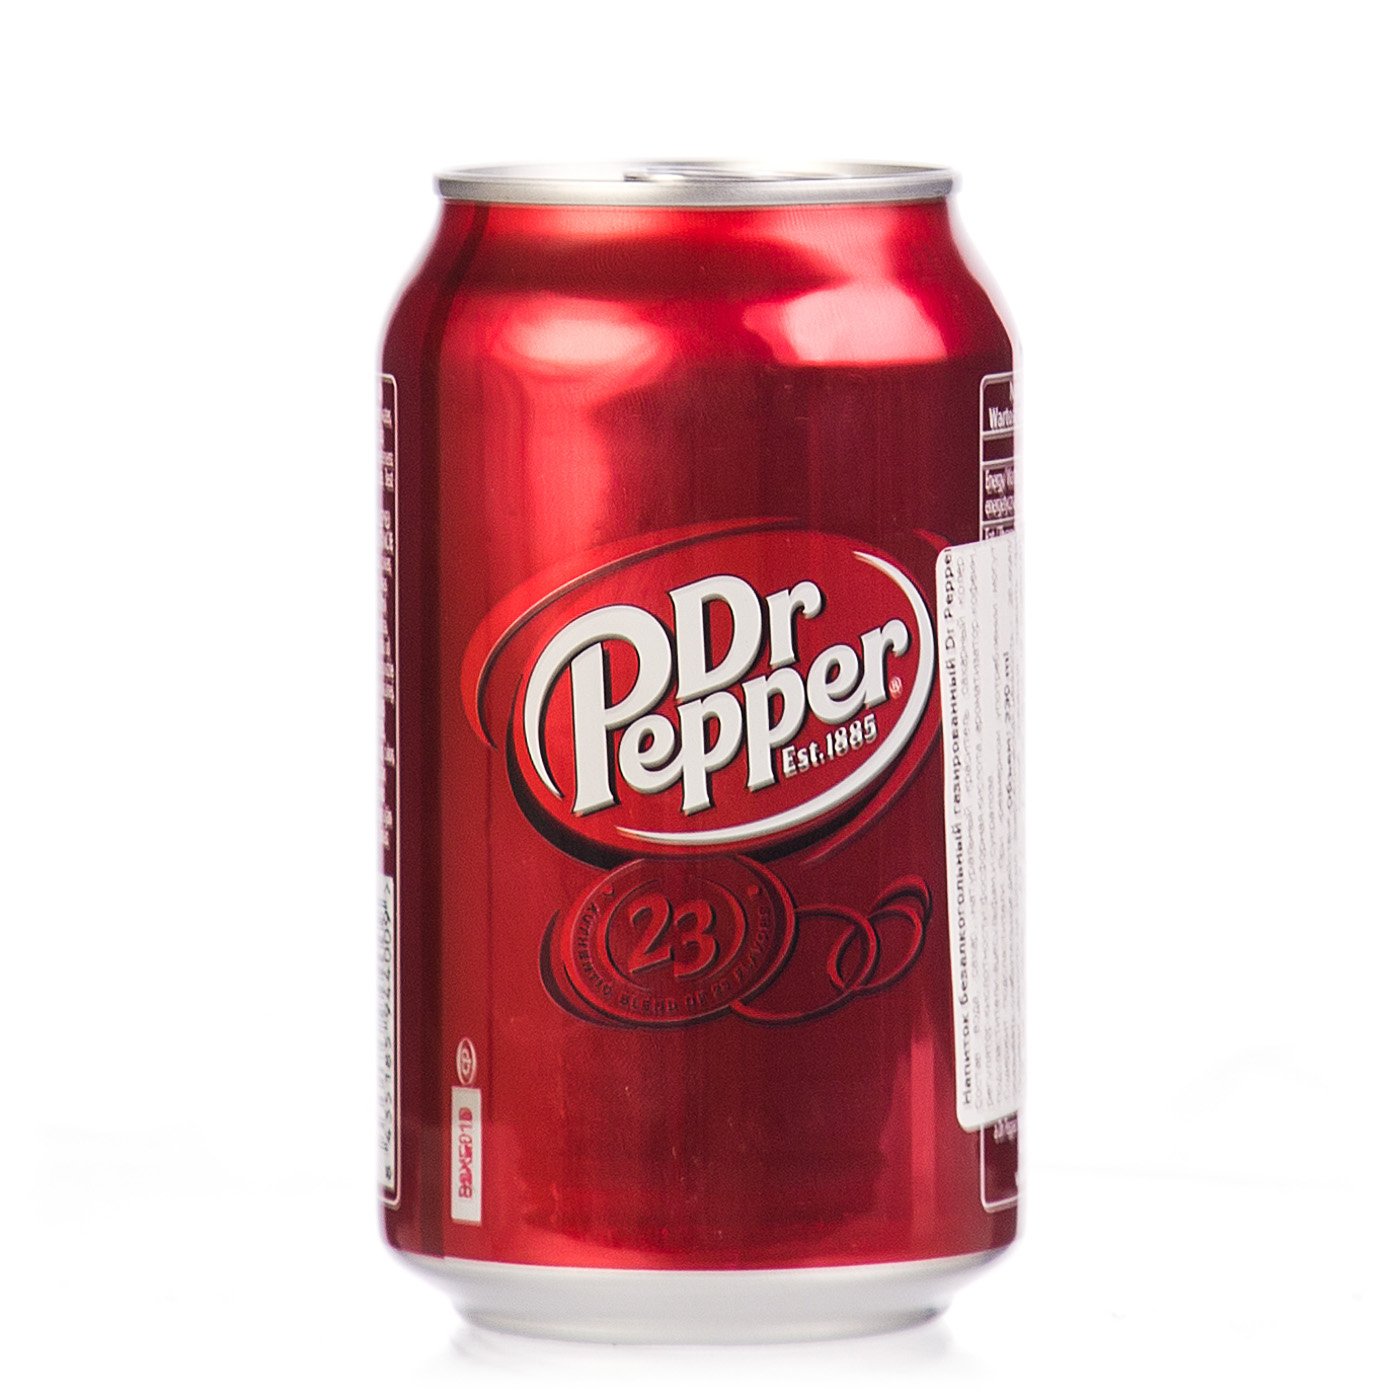 Pepper напиток. Газированные напитки доктор Пеппер. Доктор Пеппер 0,33 ж/б. Доктор Пеппер напиток. Лимонад доктор Пеппер.